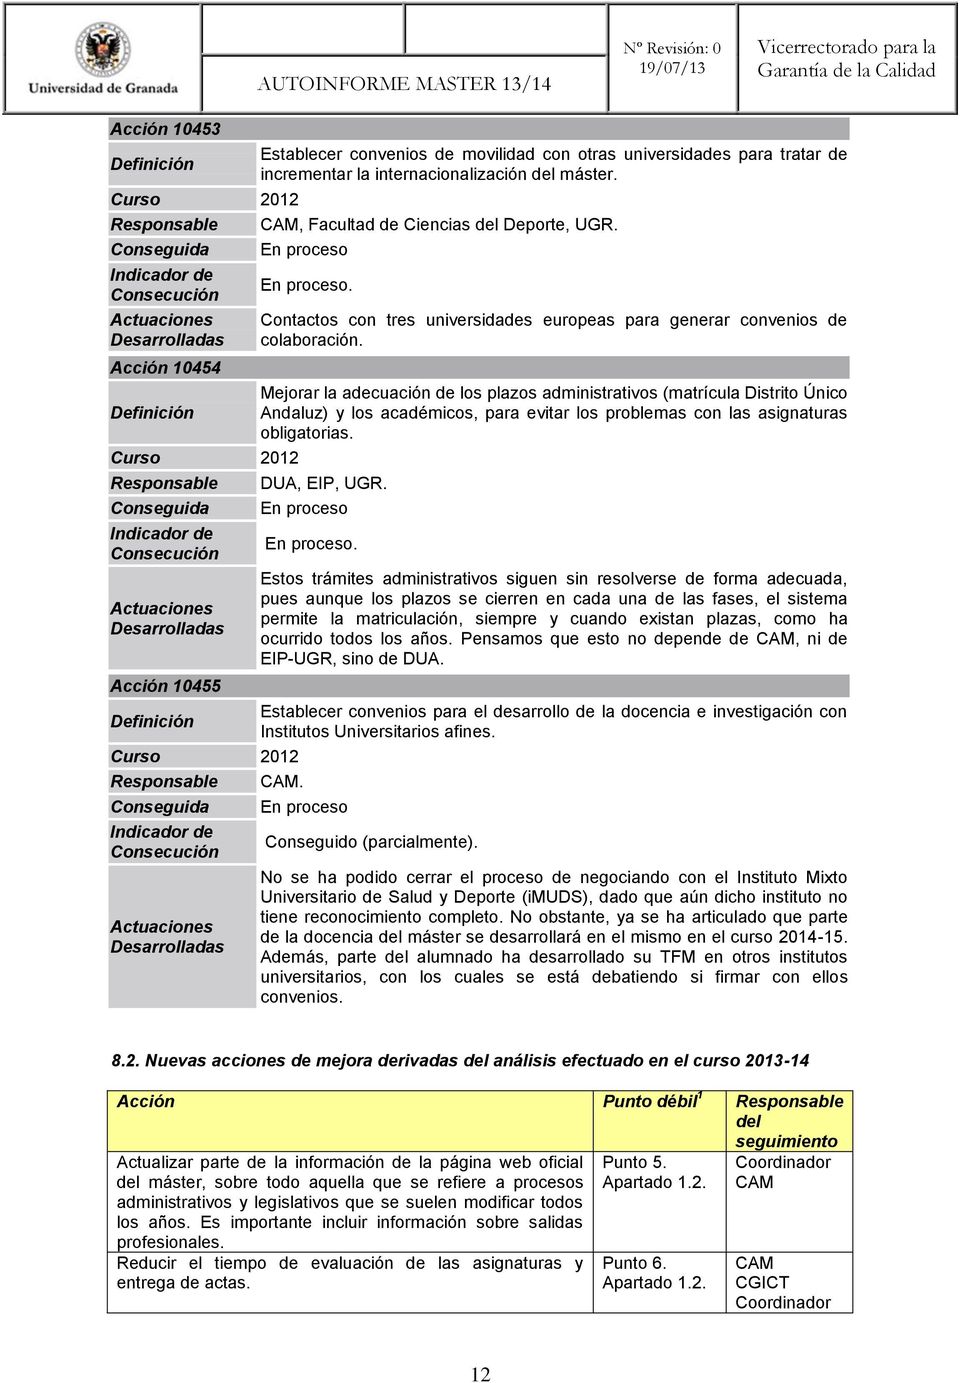 Mejorar la adecuación de los plazos administrativos (matrícula Distrito Único Andaluz) y los académicos, para evitar los problemas con las asignaturas obligatorias. DUA, EIP, UGR.